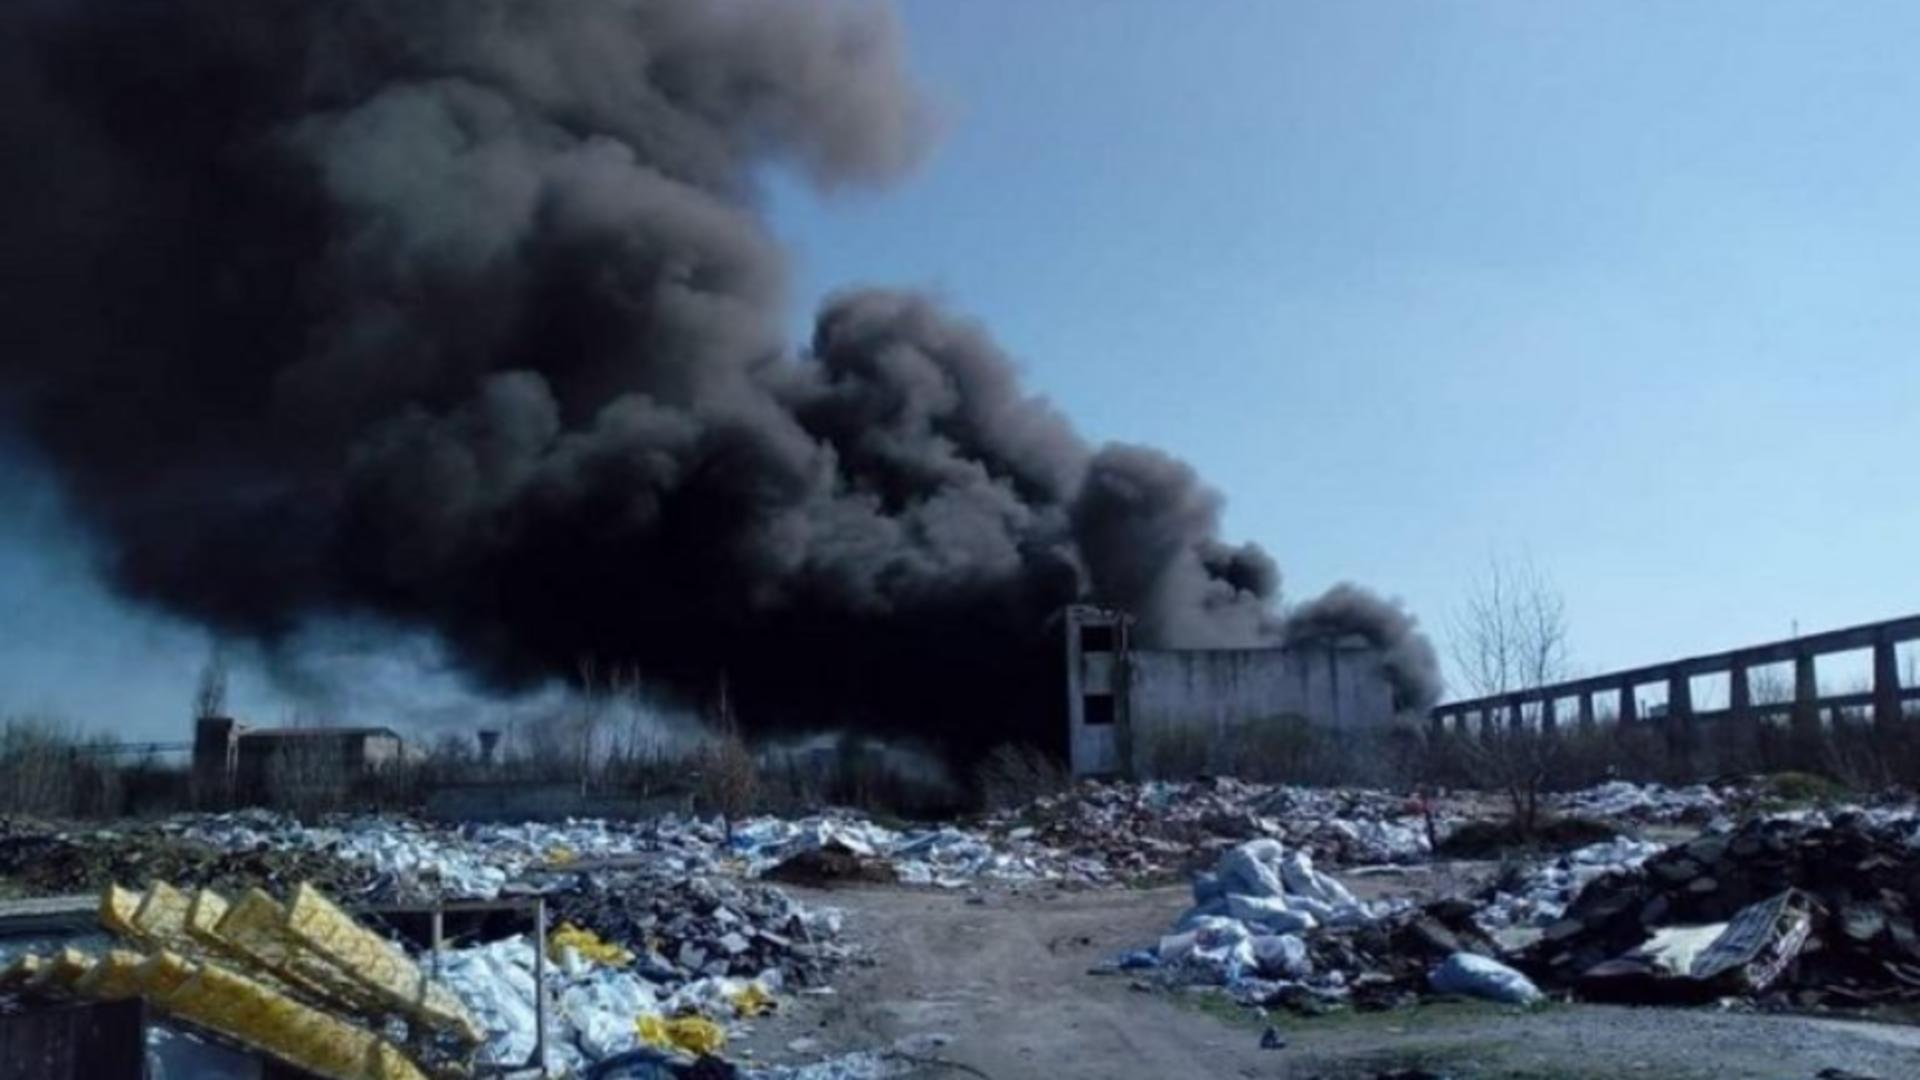 Control în Bălteni, raiul arderilor ilegale din Dâmbovița! Sute de polițiști verifică autorizațiile de mediu